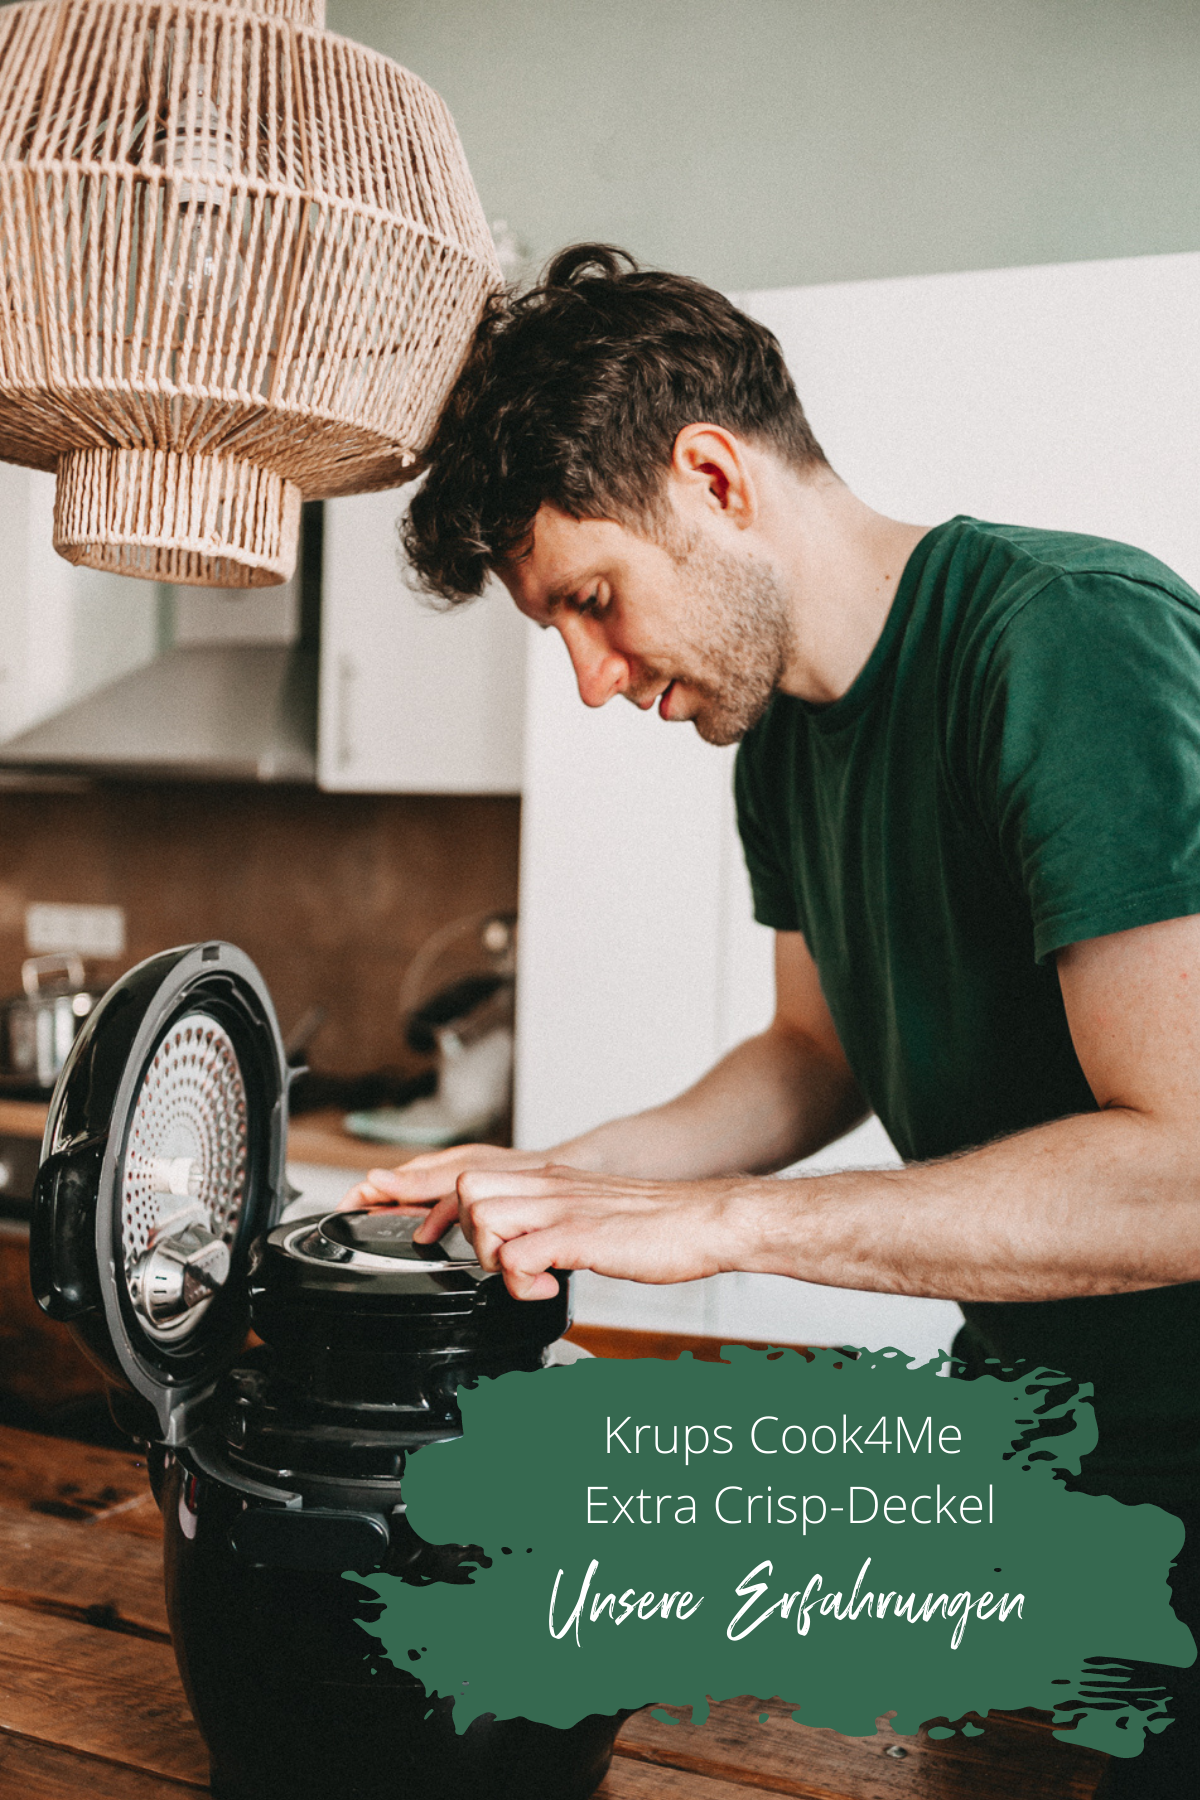 KRUPS Cook4Me Extra Crisp-Deckel Erfahrungen